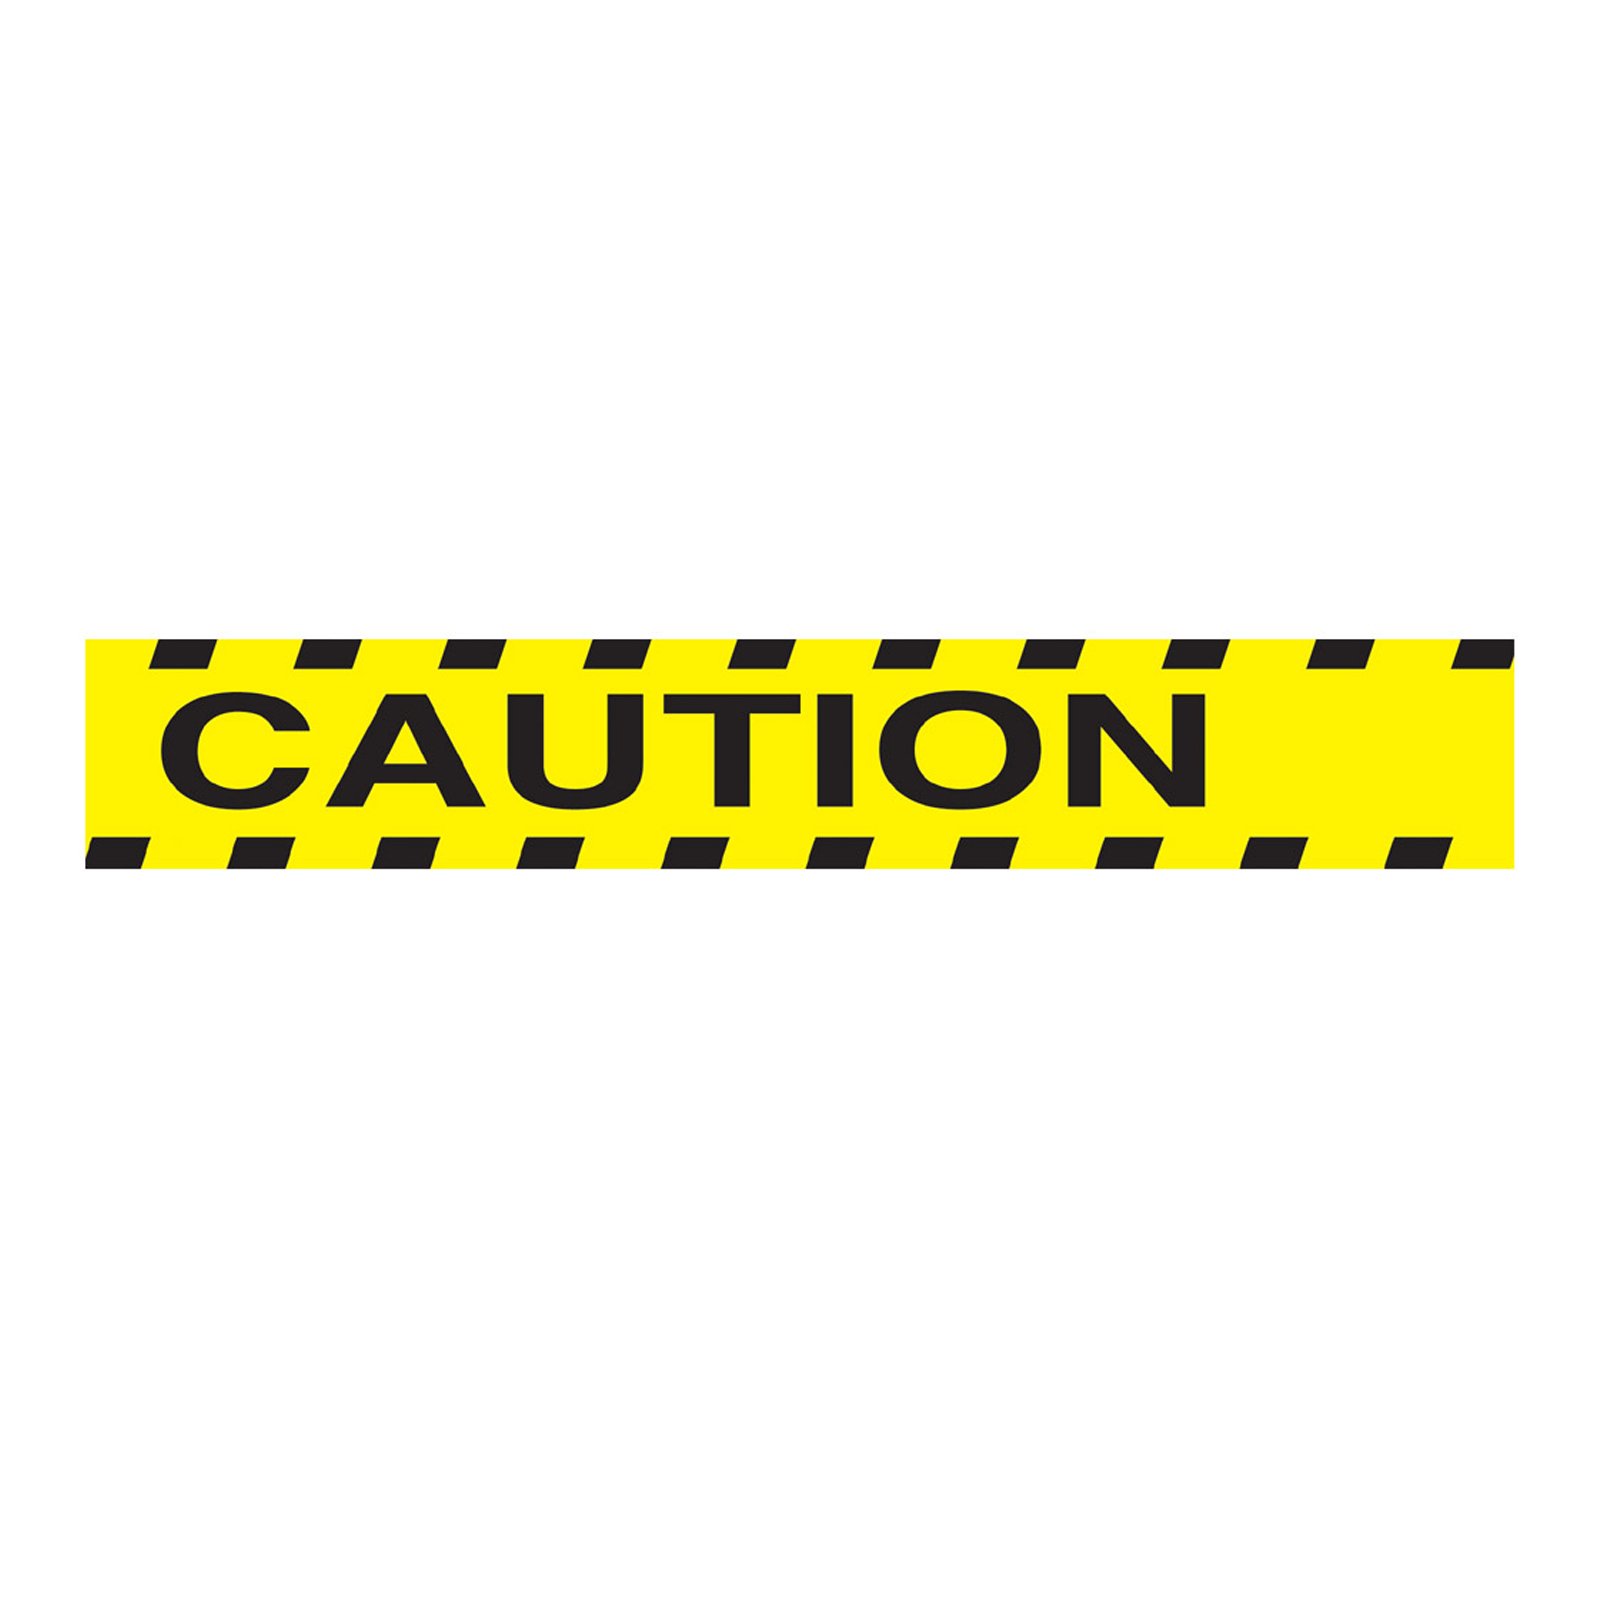 Caution Tape Clip Art